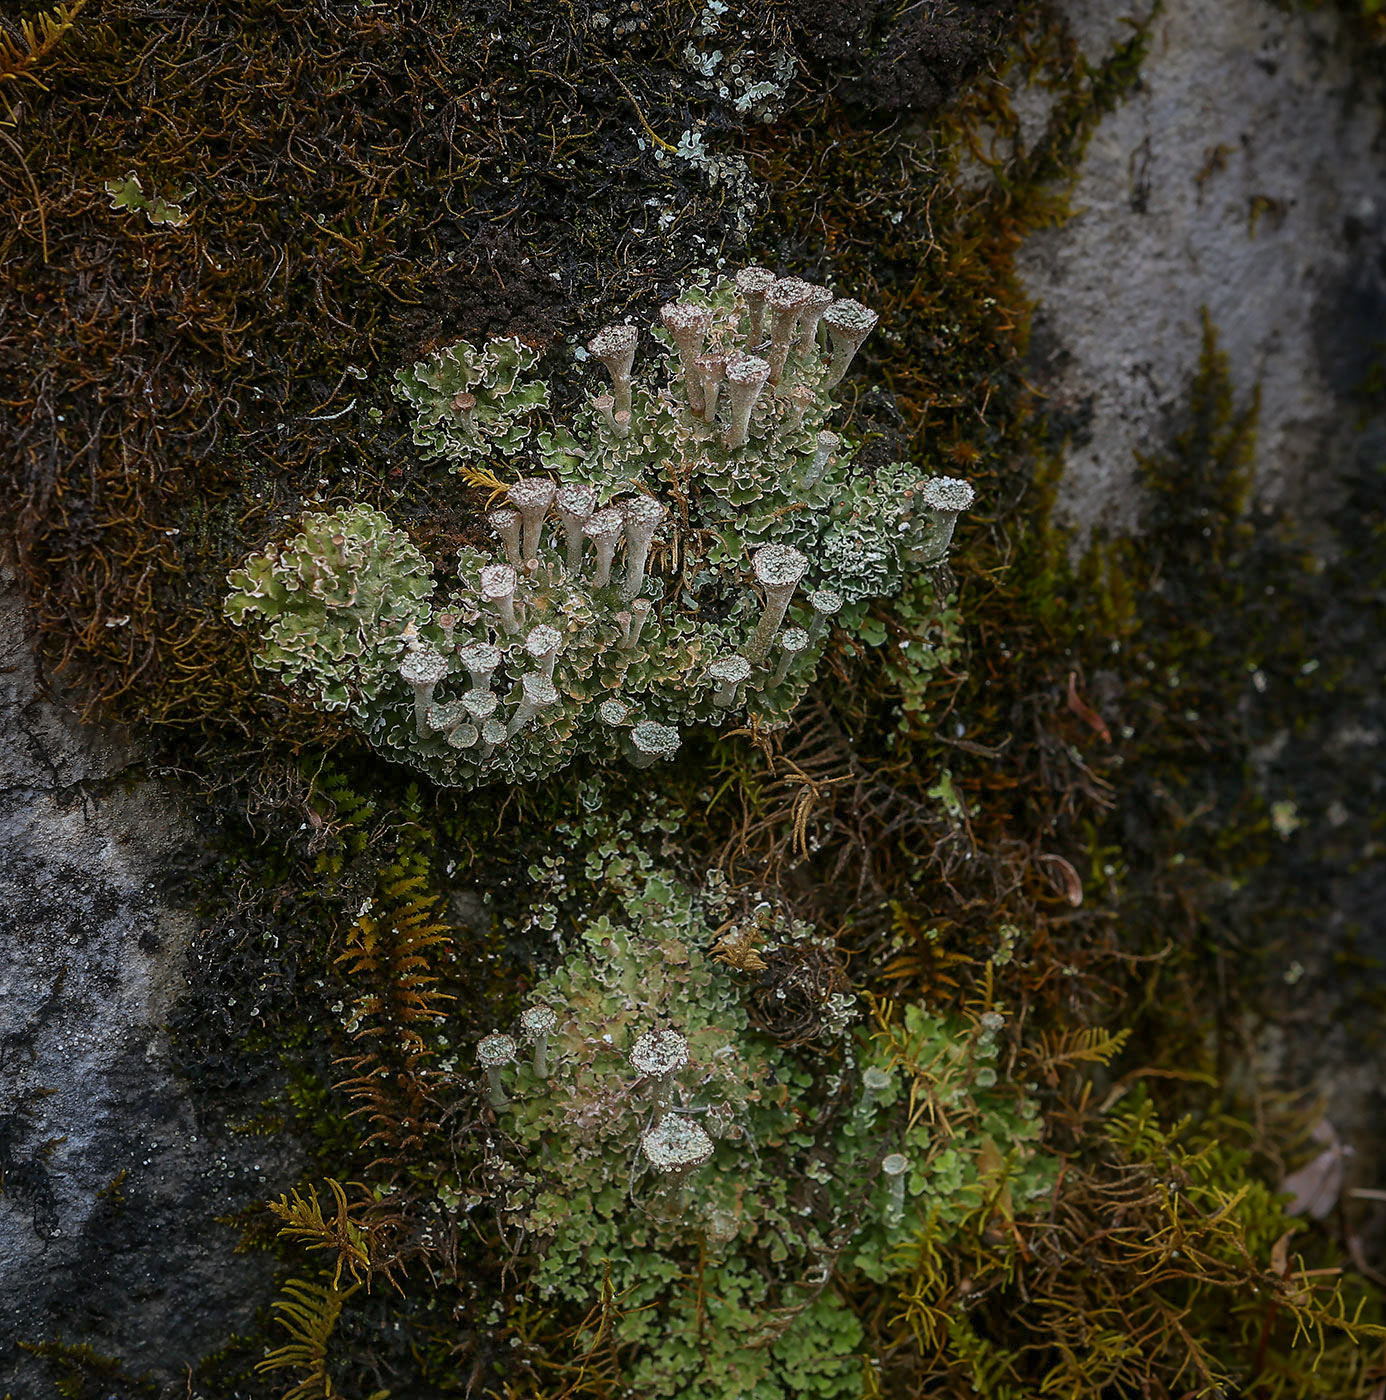 Image of genus Cladonia specimen.